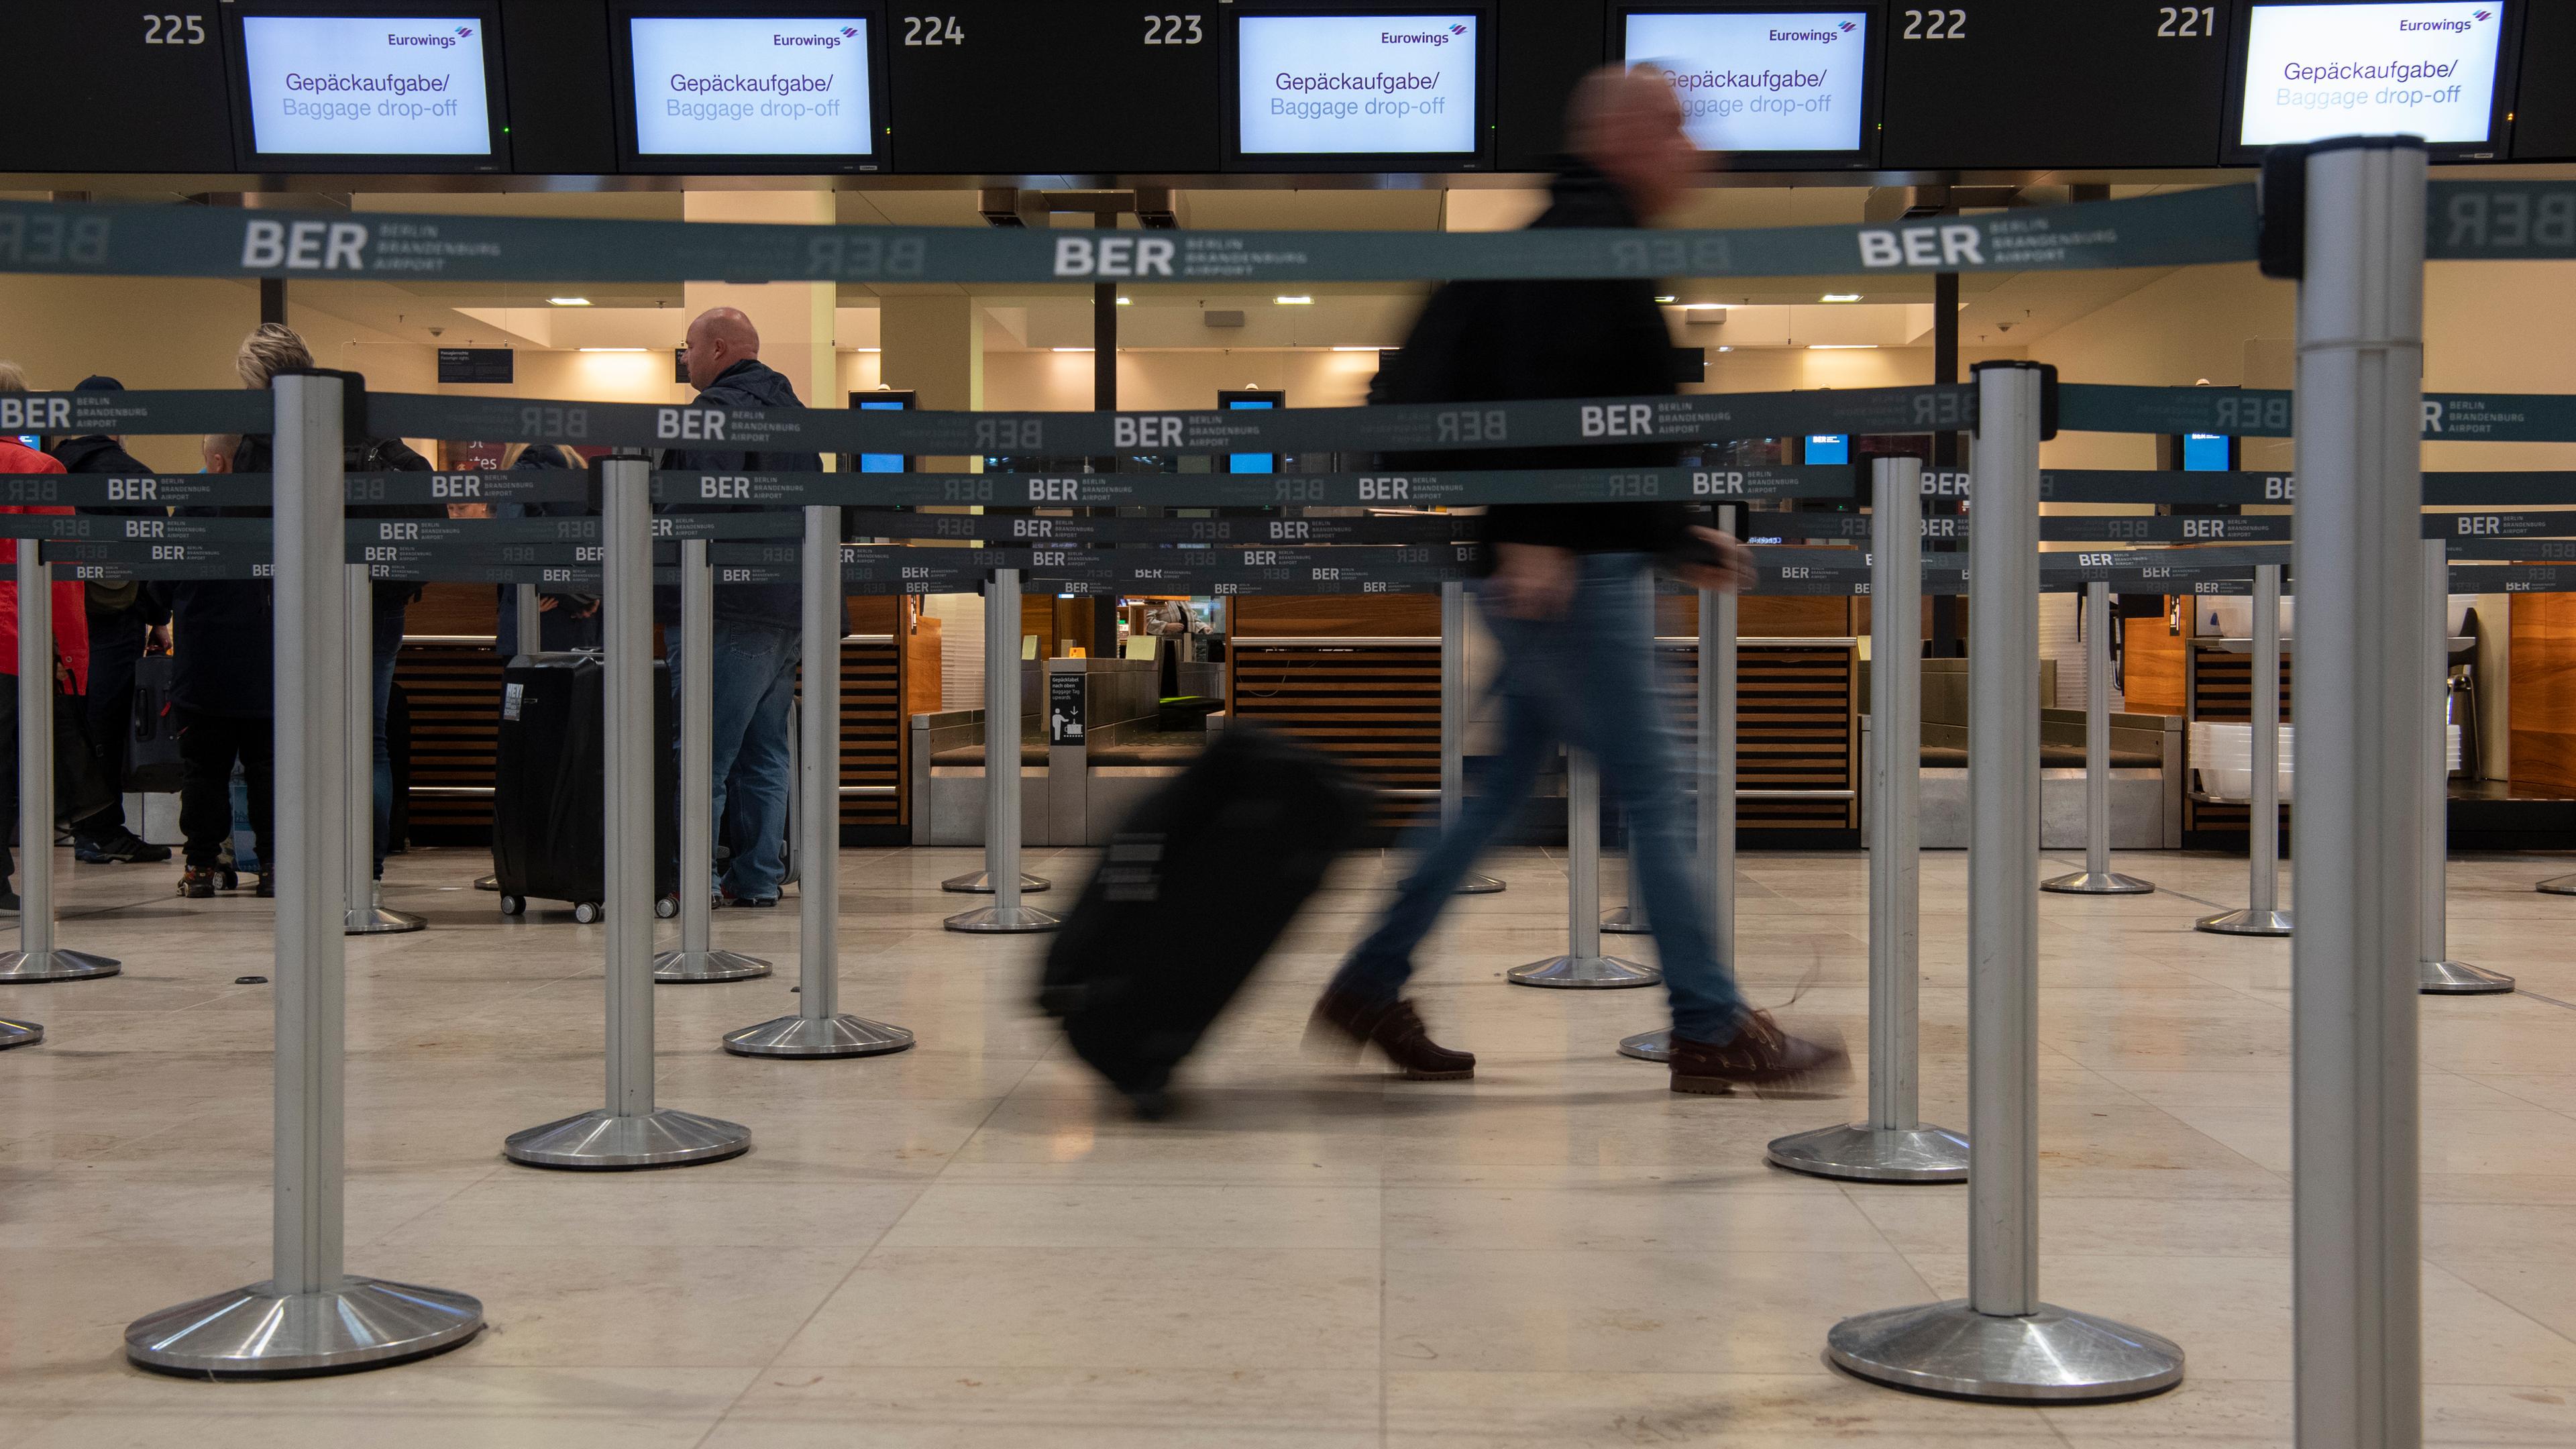 Berlin: Ein Reisender geht mit einem Koffer zu einem Check-in-Schalter von Eurowings.